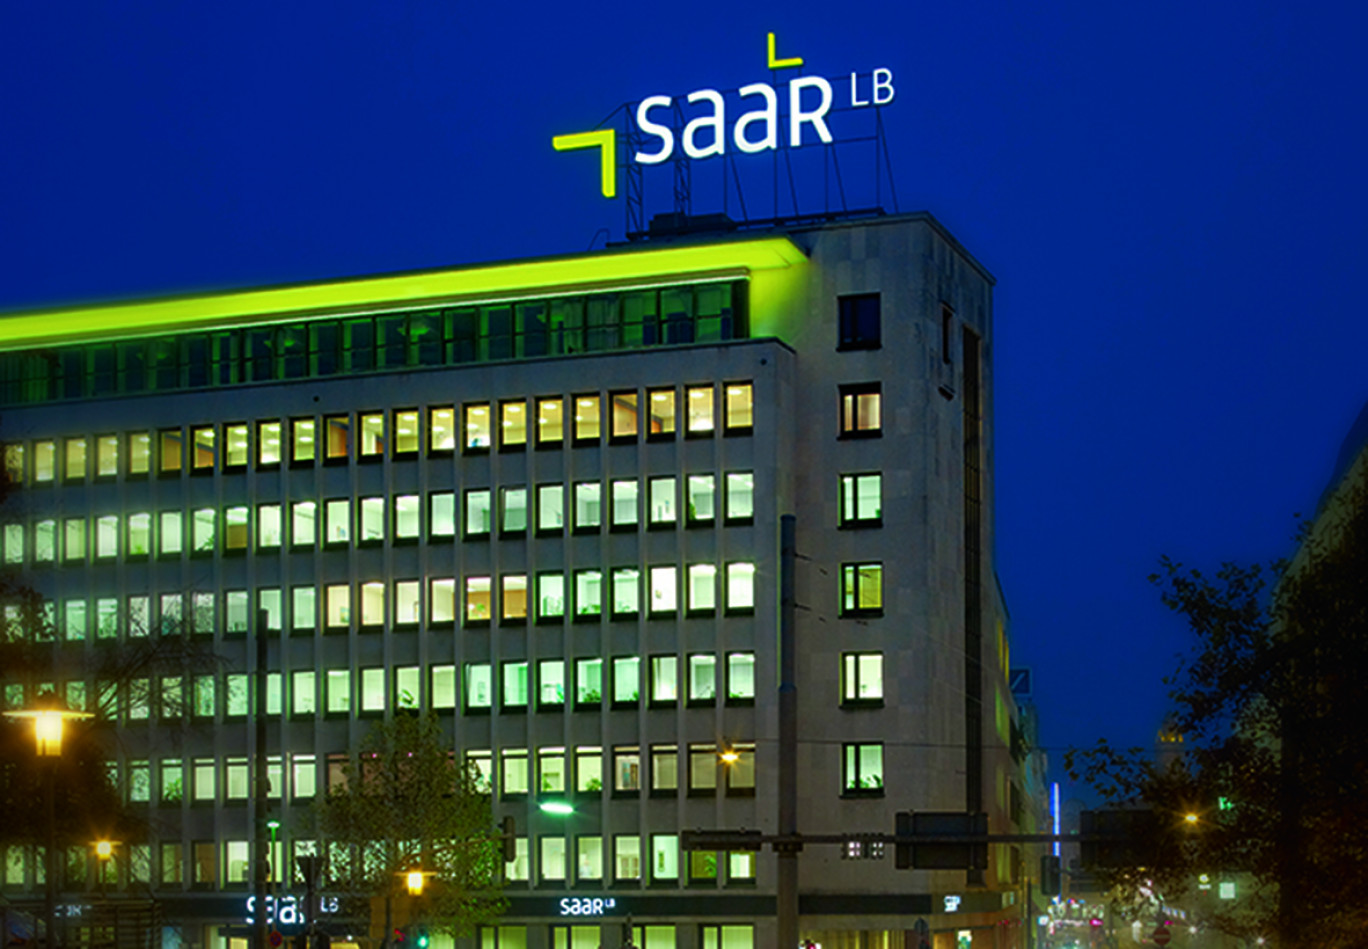 La banque franco-allemande, SaarLB, affiche un résultat semestriel positif malgré les répercussions de la pandémie de coronavirus. Crédit photo : SaarLB